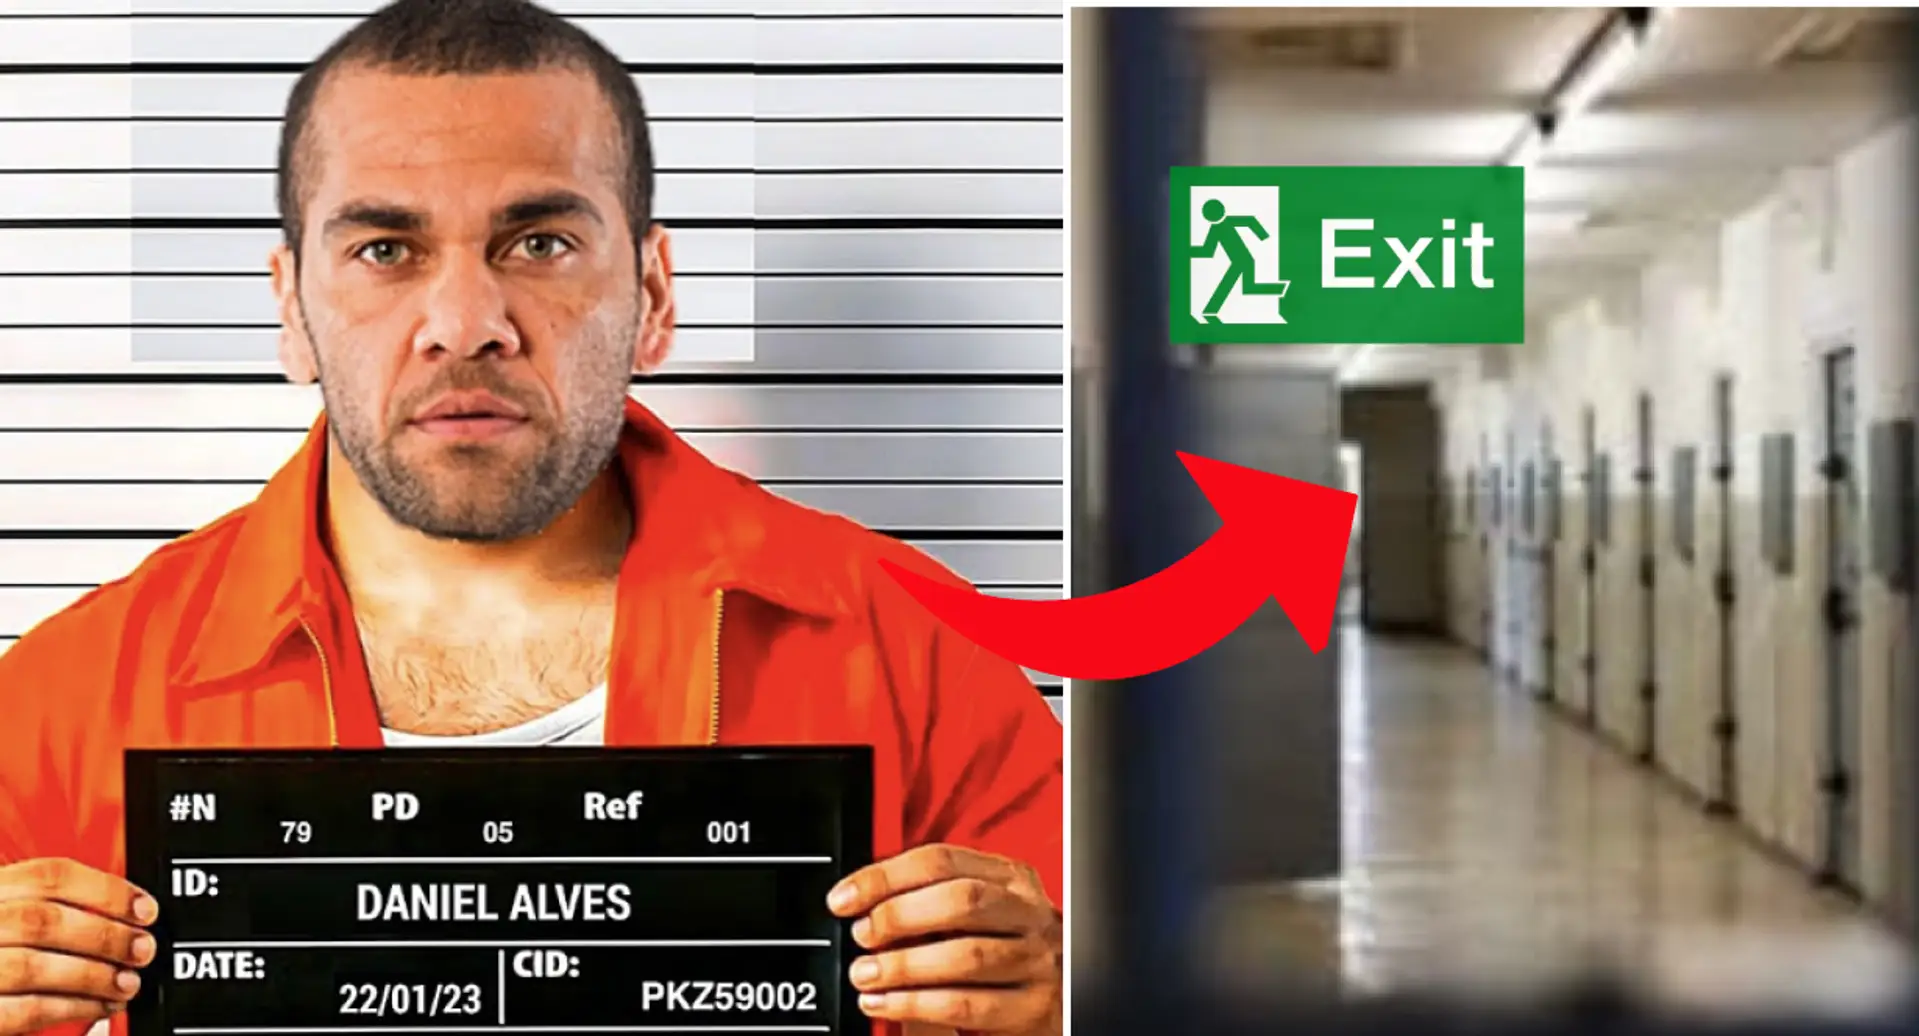 Dani Alves' failed prison break plan revealed